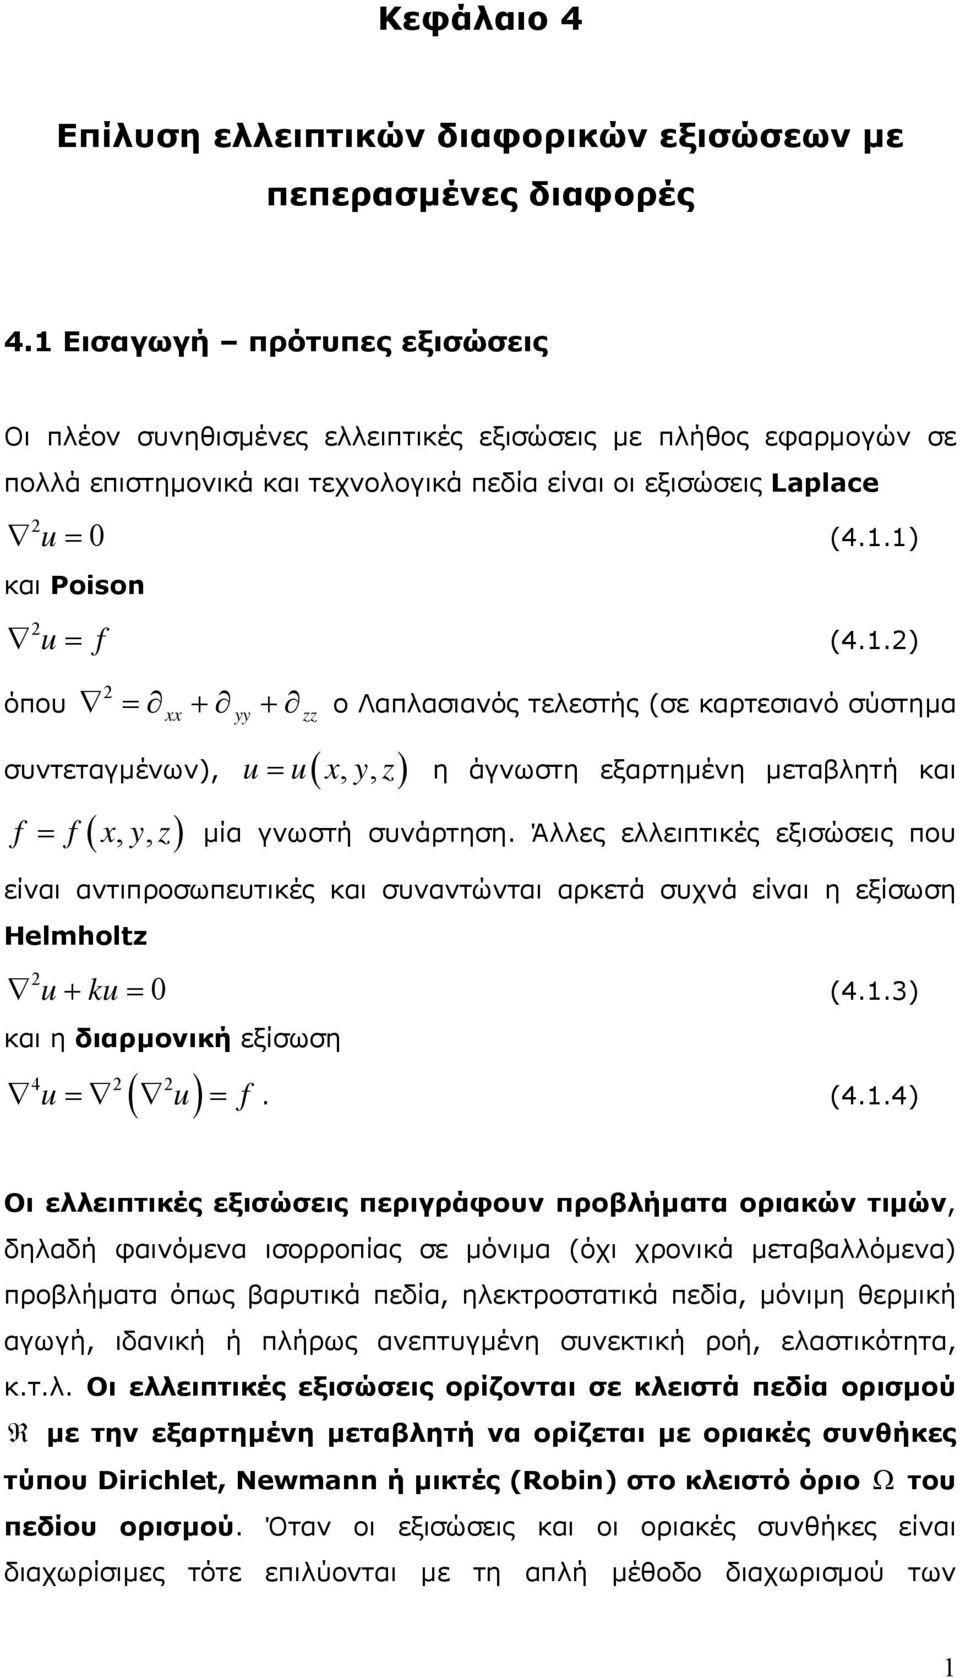 εξαρτηµένη µεταβλητή και = µία γνωστή συνάρτηση Άλλες ελλειπτικές εξισώσεις που είναι αντιπροσωπευτικές και συναντώνται αρκετά συχνά είναι η εξίσωση Helmholtz u ku 0 + = (43) και η διαρµονική εξίσωση